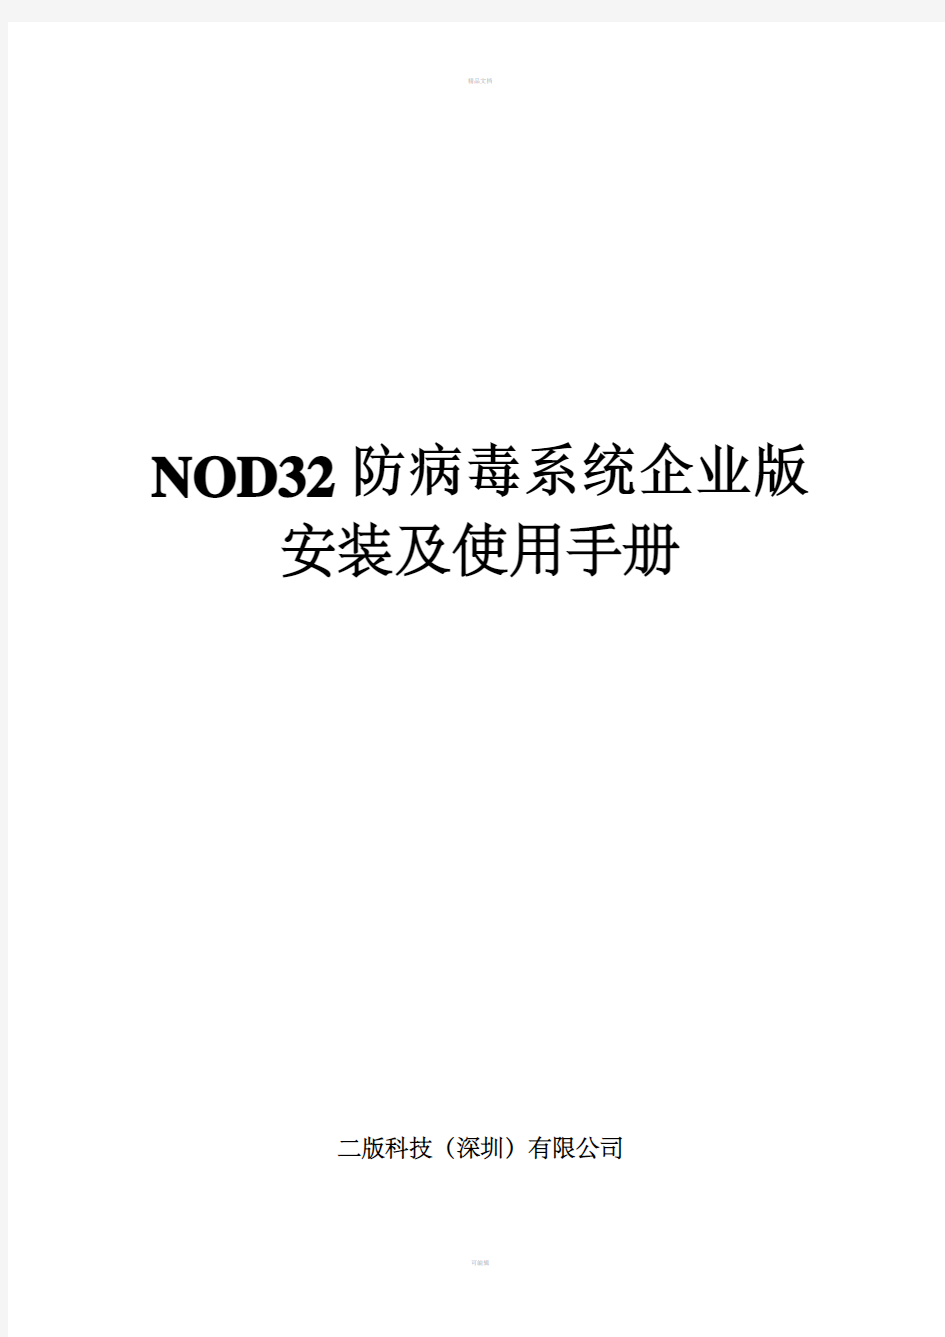 NOD32防病毒系统企业版安装及使用手册